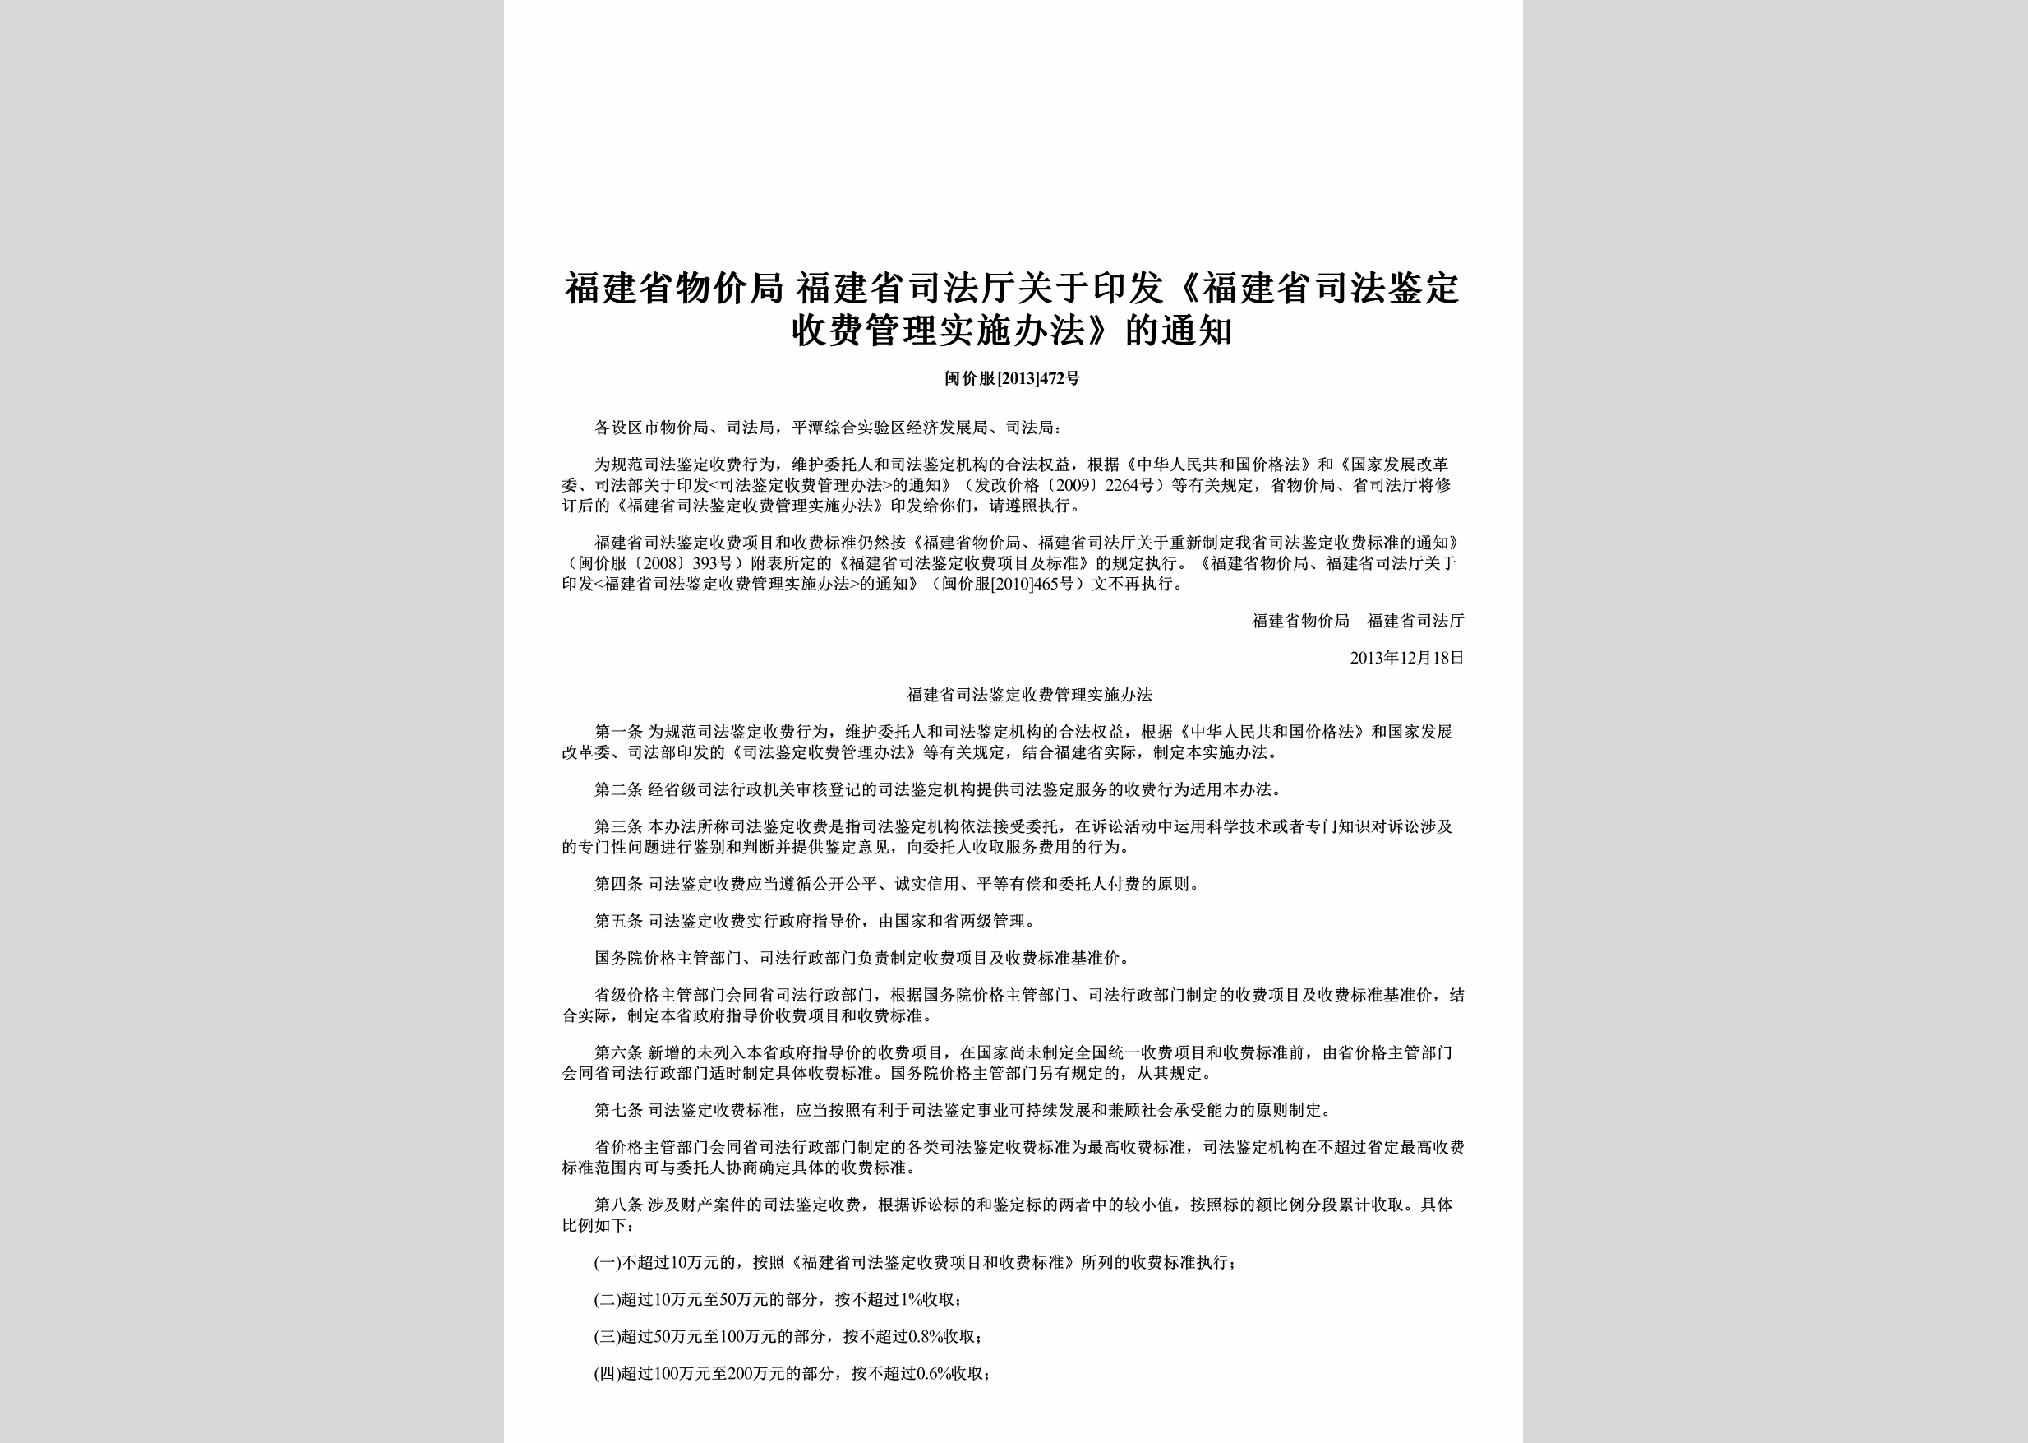 闽价服[2013]472号：关于印发《福建省司法鉴定收费管理实施办法》的通知